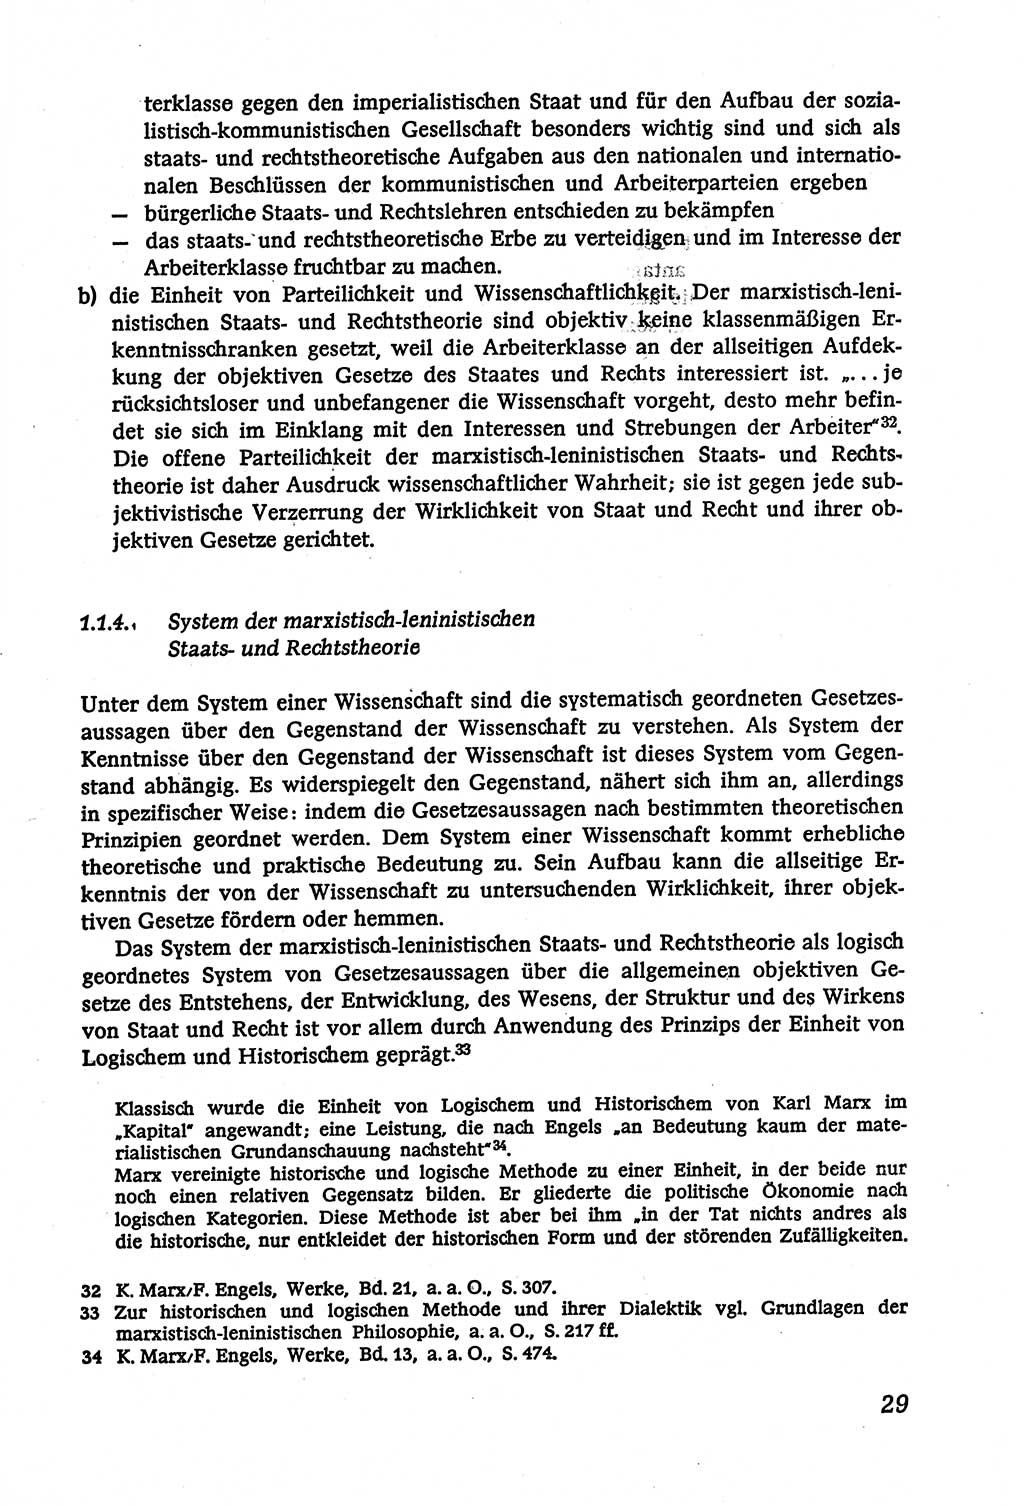 Marxistisch-leninistische (ML) Staats- und Rechtstheorie [Deutsche Demokratische Republik (DDR)], Lehrbuch 1980, Seite 29 (ML St.-R.-Th. DDR Lb. 1980, S. 29)